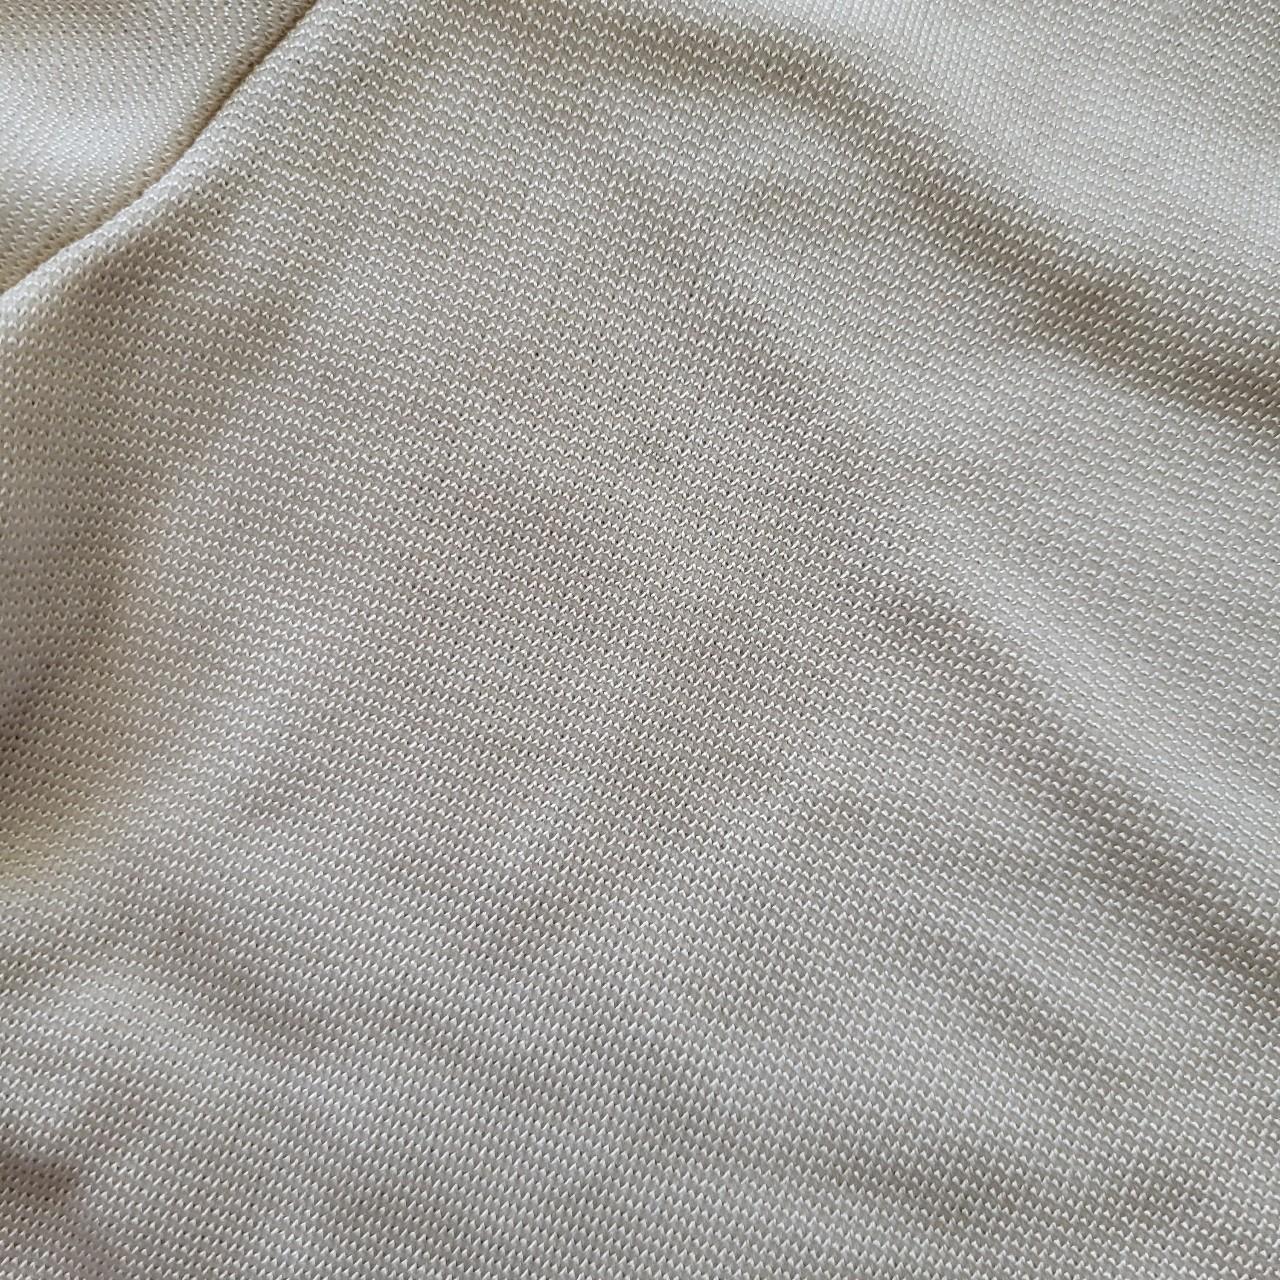 Djerf Avenue Women's White and Cream Shirt (6)